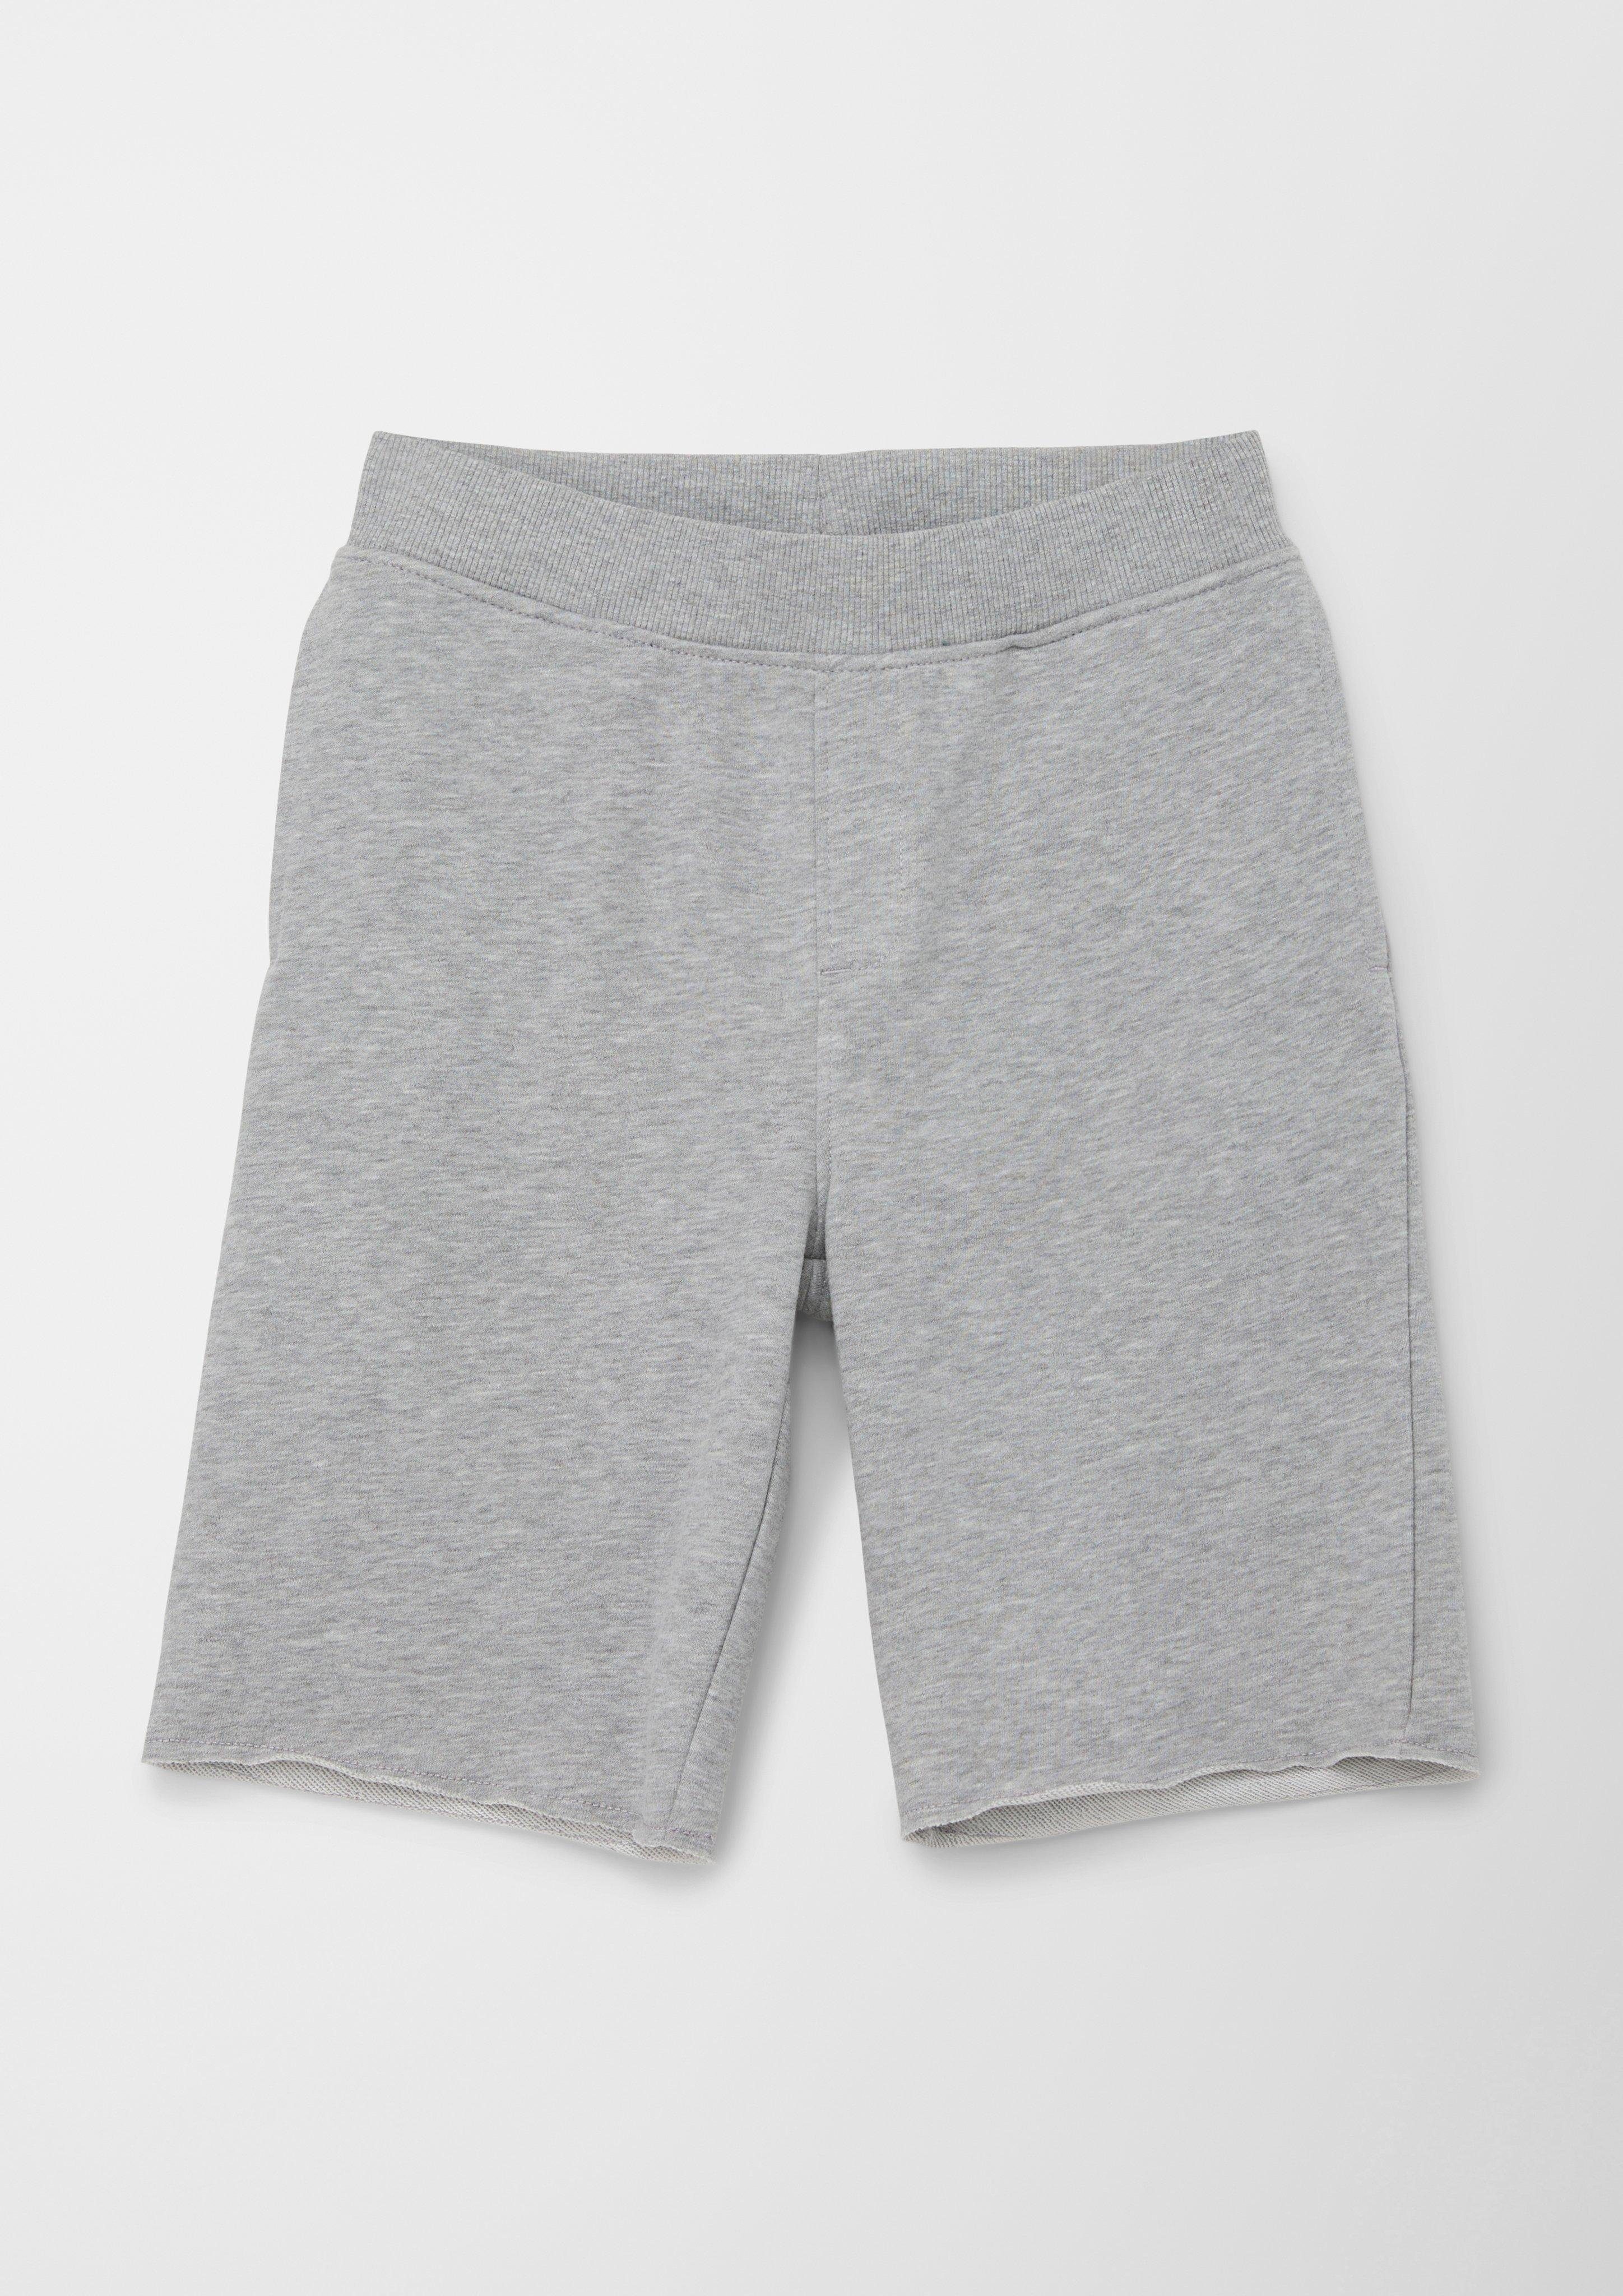 s.Oliver Leggings Regular: Sweat-Shorts mit Elastikbund Tunnelzug grau meliert angedeuteter Rippblende